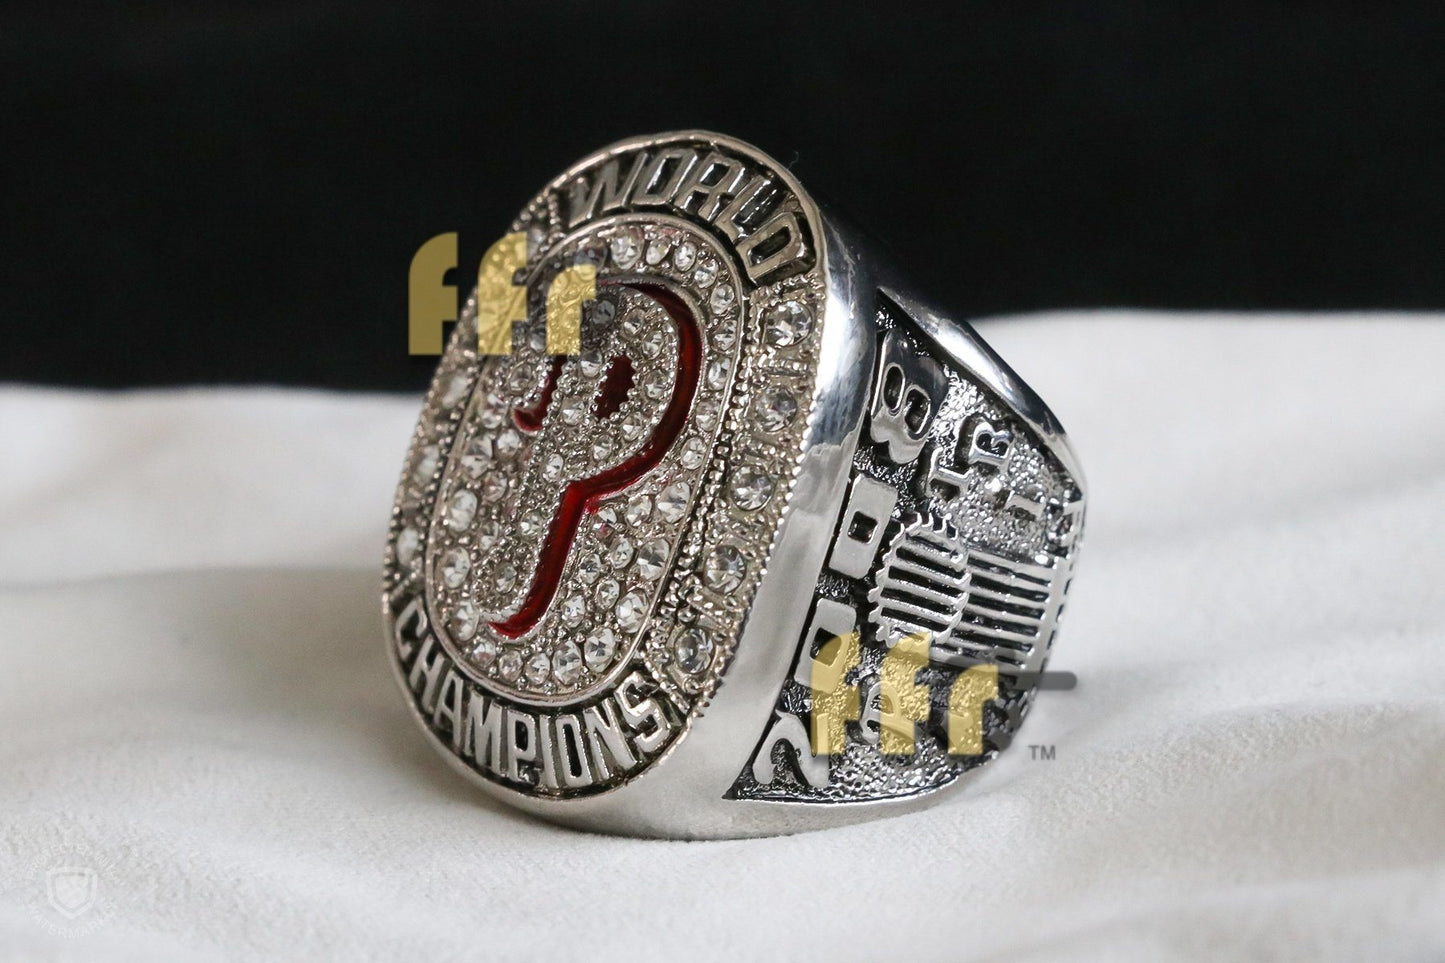 Philadelphia Phillies World Series Ring (2008) - Manuel - Rings For Champs, NFL rings, MLB rings, NBA rings, NHL rings, NCAA rings, Super bowl ring, Superbowl ring, Super bowl rings, Superbowl rings, Dallas Cowboys